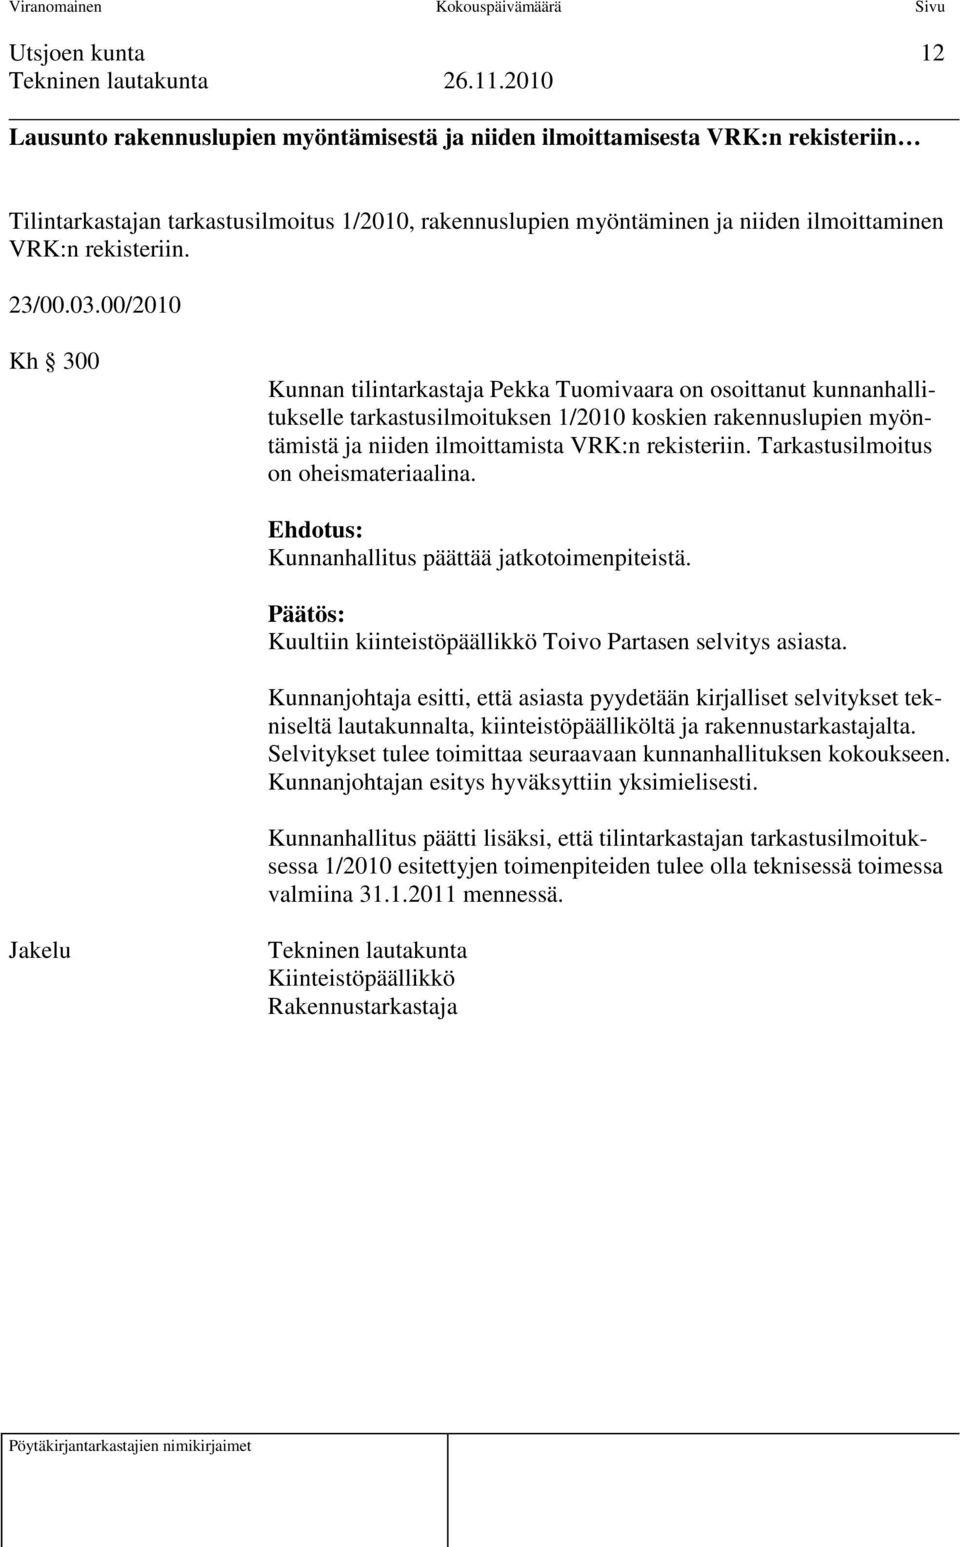 00/2010 Kh 300 Kunnan tilintarkastaja Pekka Tuomivaara on osoittanut kunnanhallitukselle tarkastusilmoituksen 1/2010 koskien rakennuslupien myöntämistä ja niiden ilmoittamista VRK:n rekisteriin.